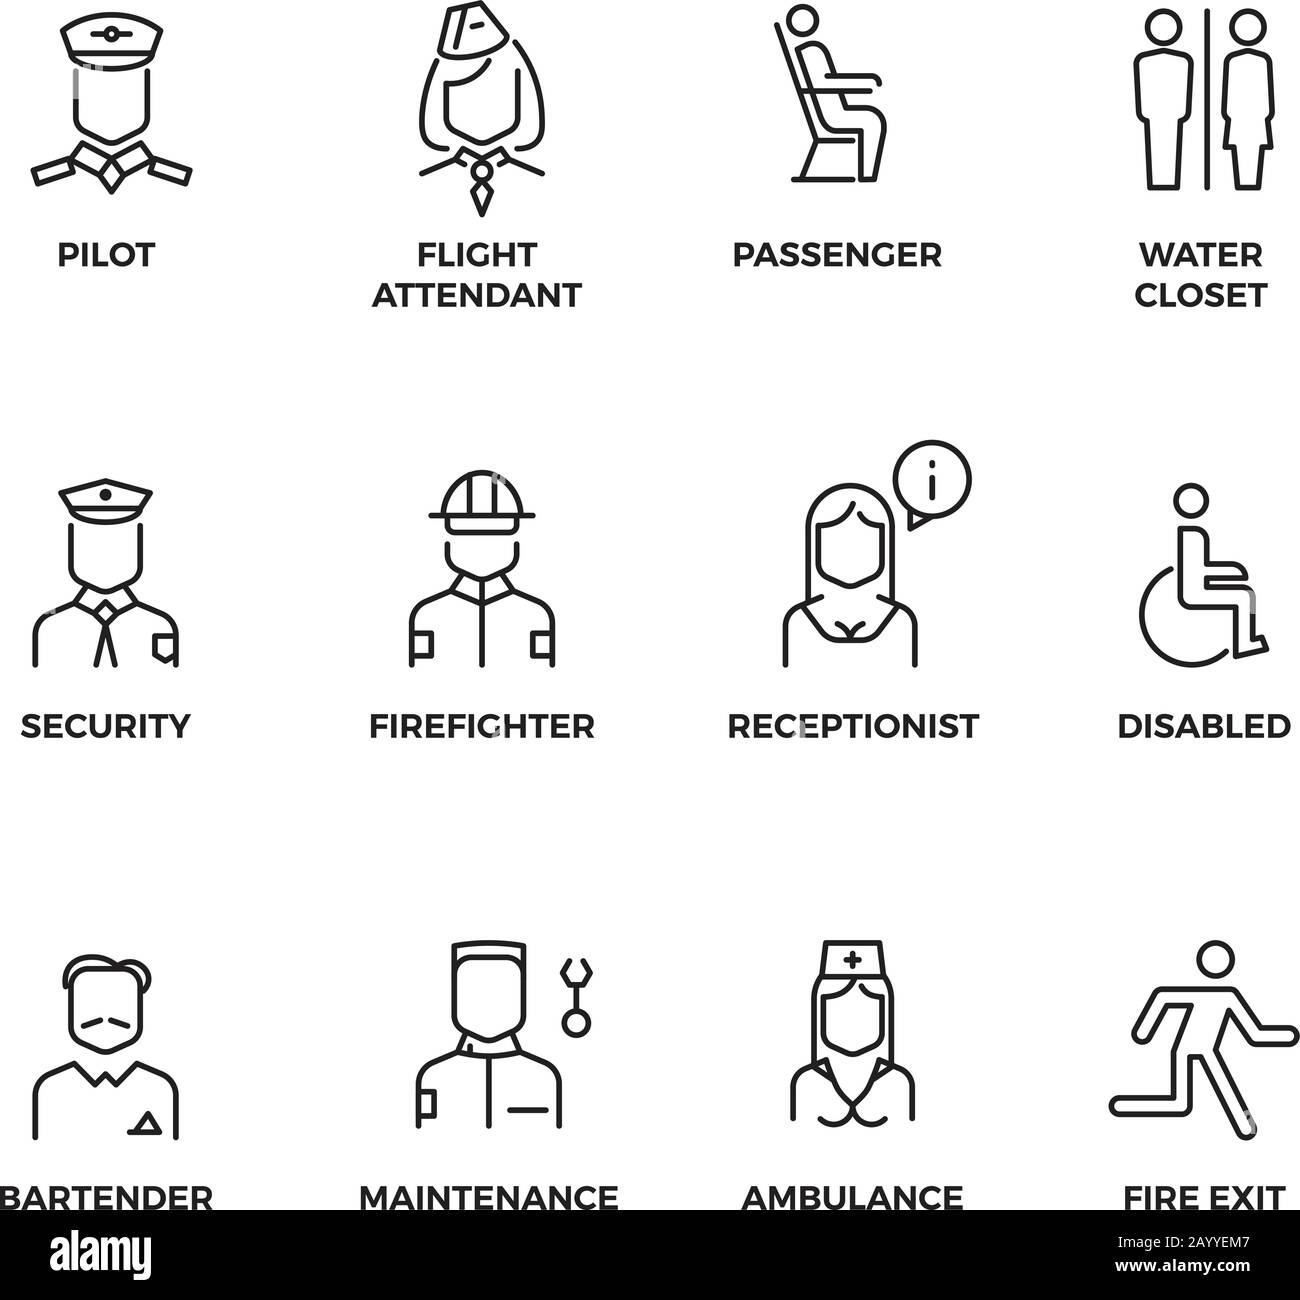 Icone vettoriali lineari del personale aeronautico. Il pilota, il passeggero, la hostess, il responsabile della sicurezza delineano i simboli. Illustrazione del personale per l'amministrazione dell'aviazione e l'infermiere, linea di icona per l'aeroporto Illustrazione Vettoriale